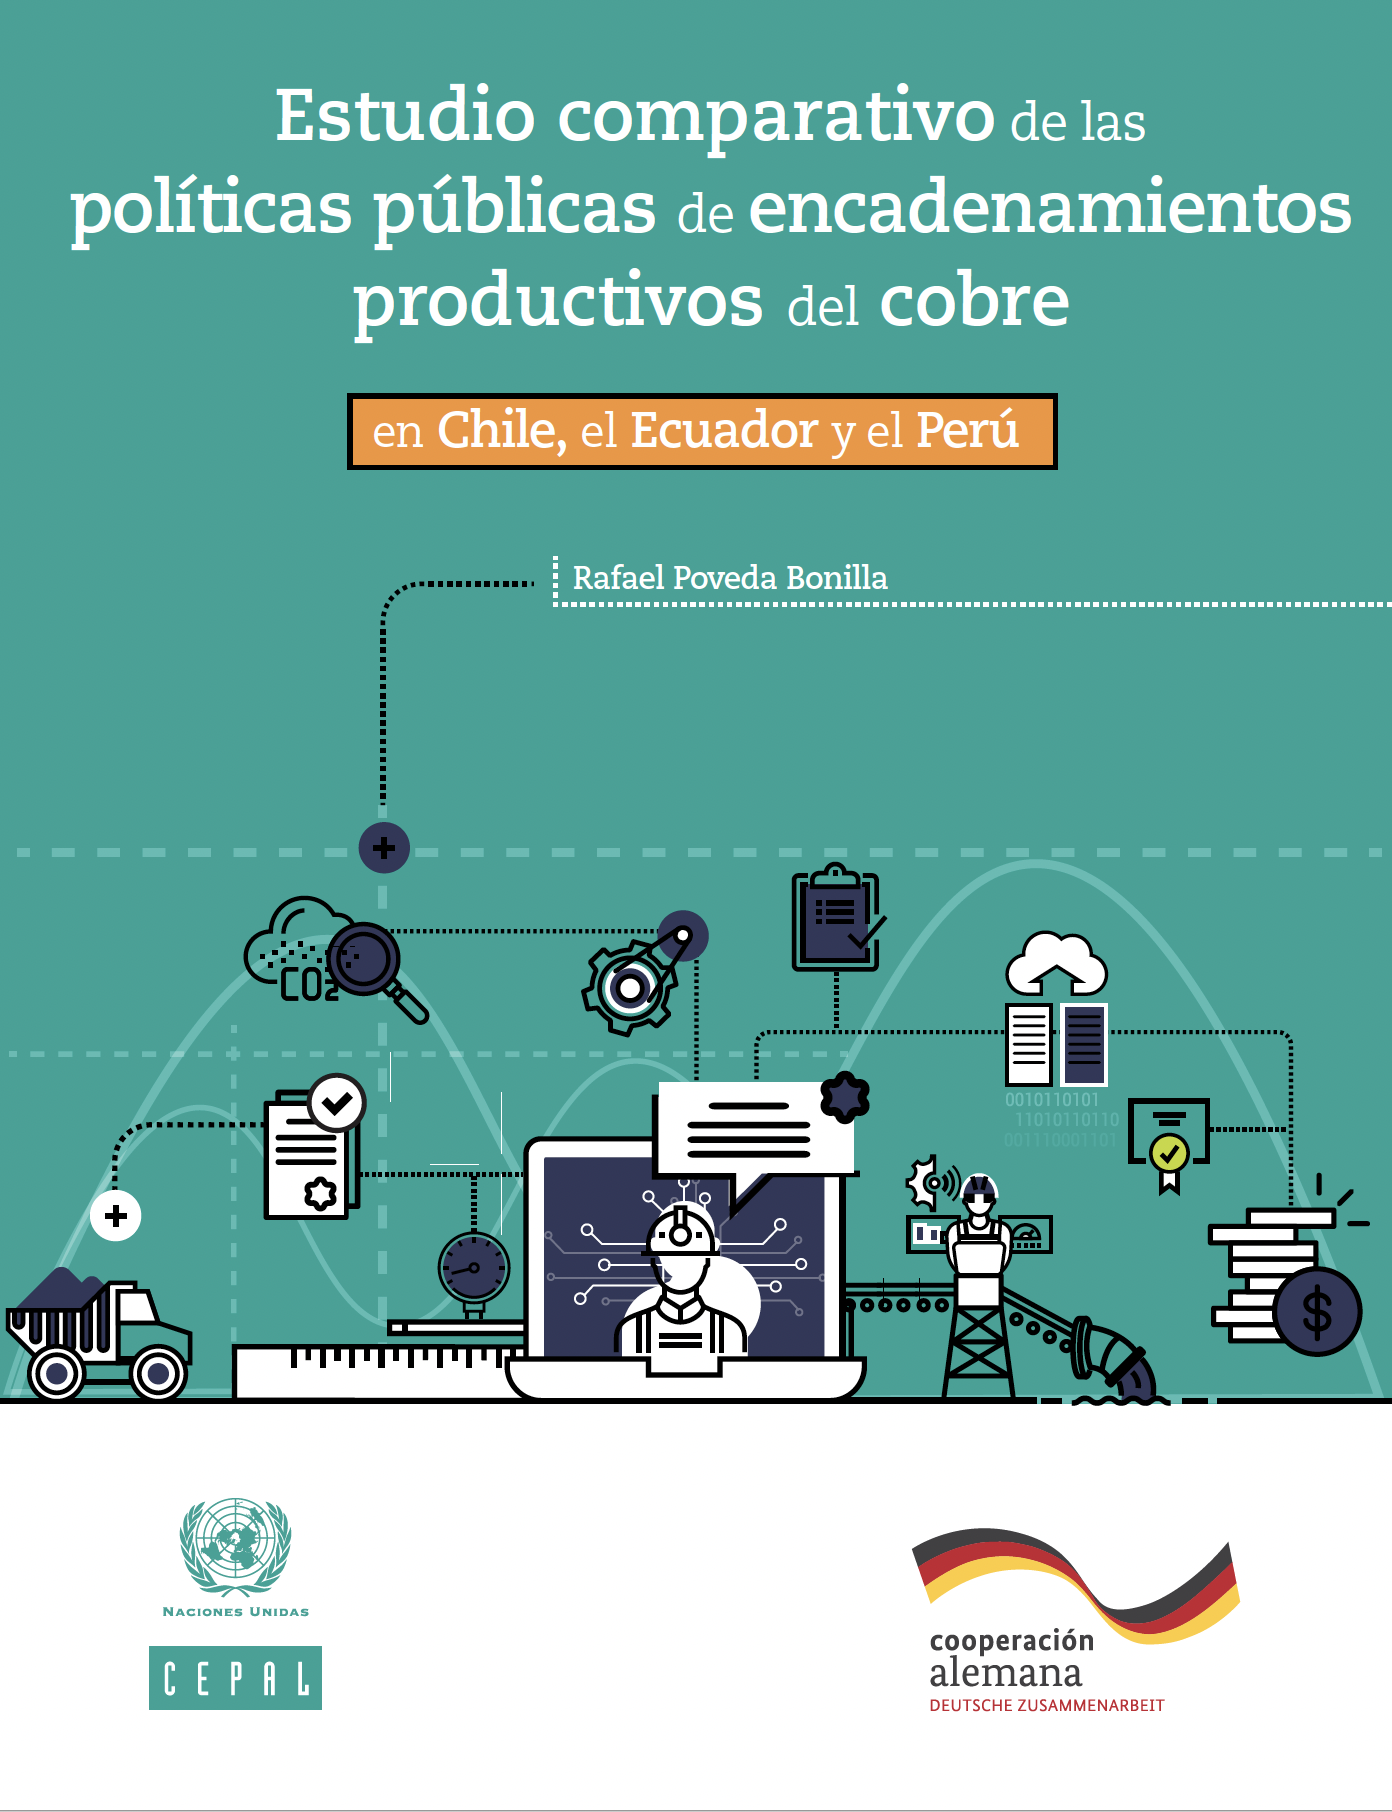 Estudio comparativo de las políticas públicas de encadenamientos productivos del cobre en Chile, el Ecuador y el Perú